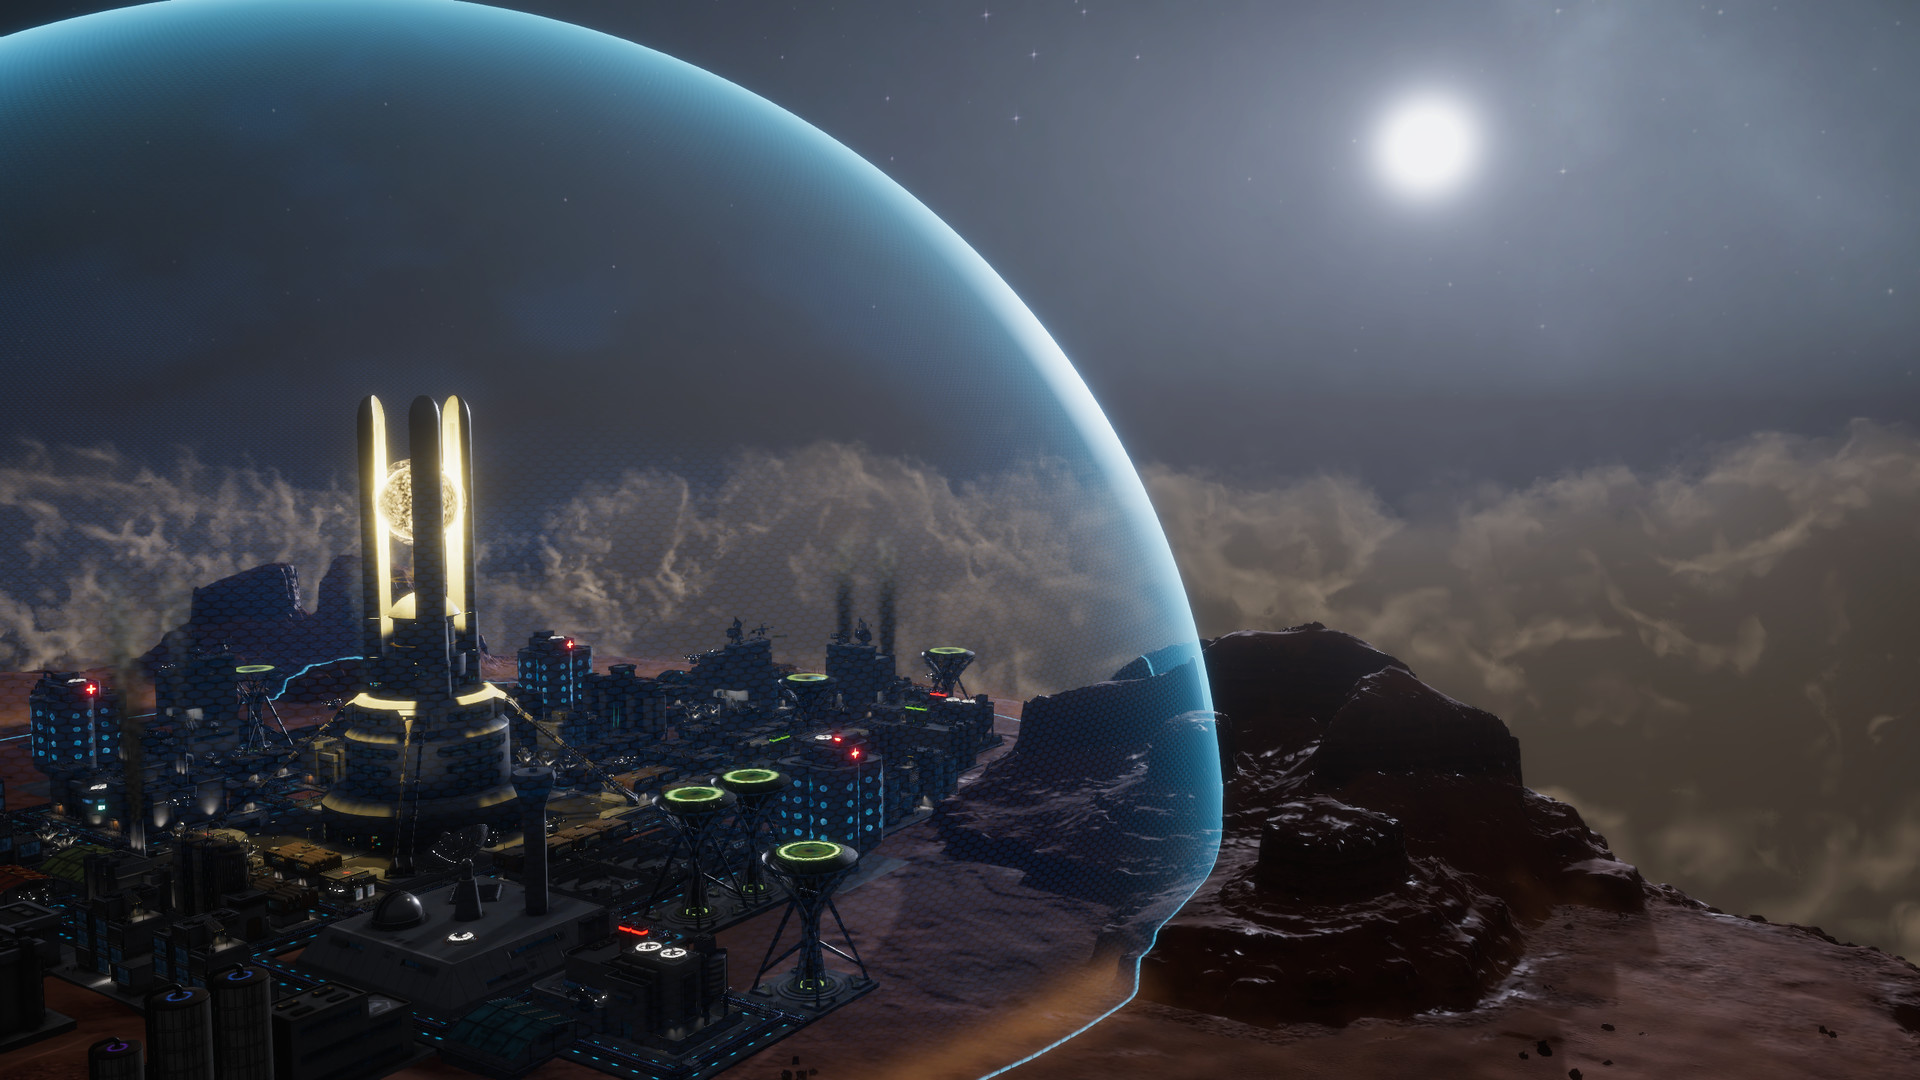 [$ 4.72] Sphere: Flying Cities Steam CD Key